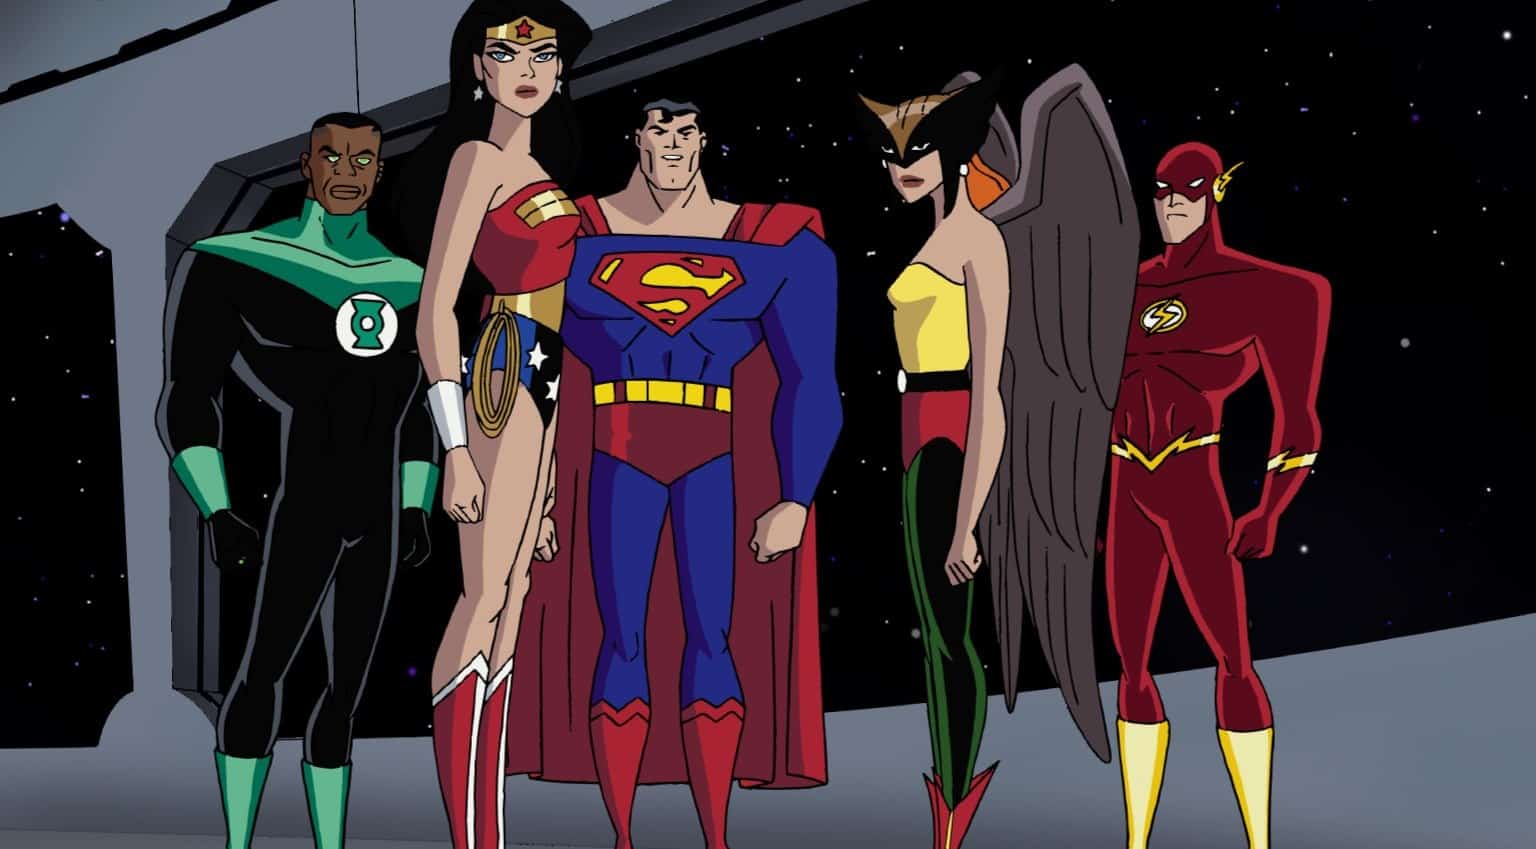 Liga da Justiça - história por trás do principal grupo de herói da DC